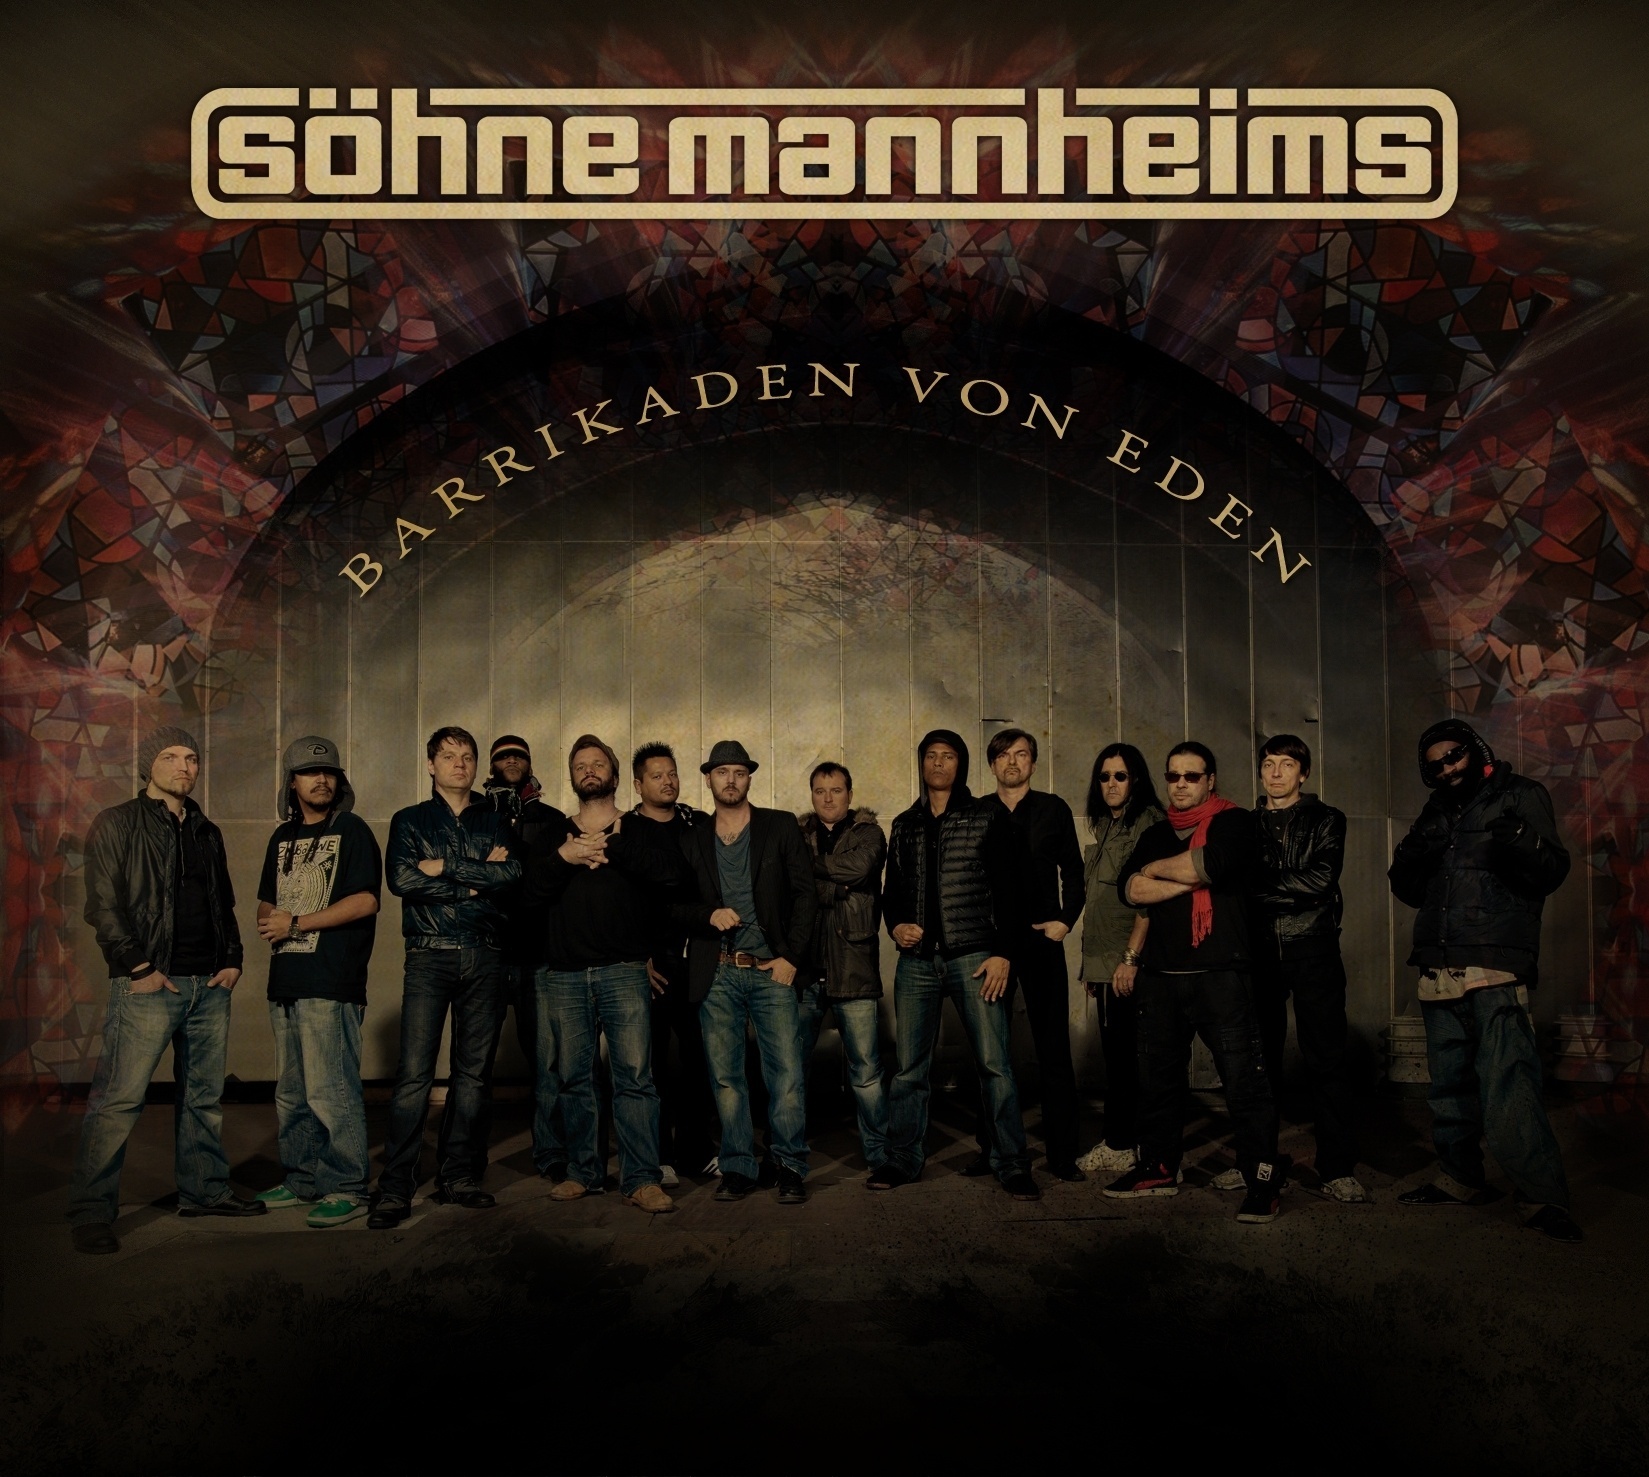 Barrikaden von Eden - Söhne Mannheims. (CD)